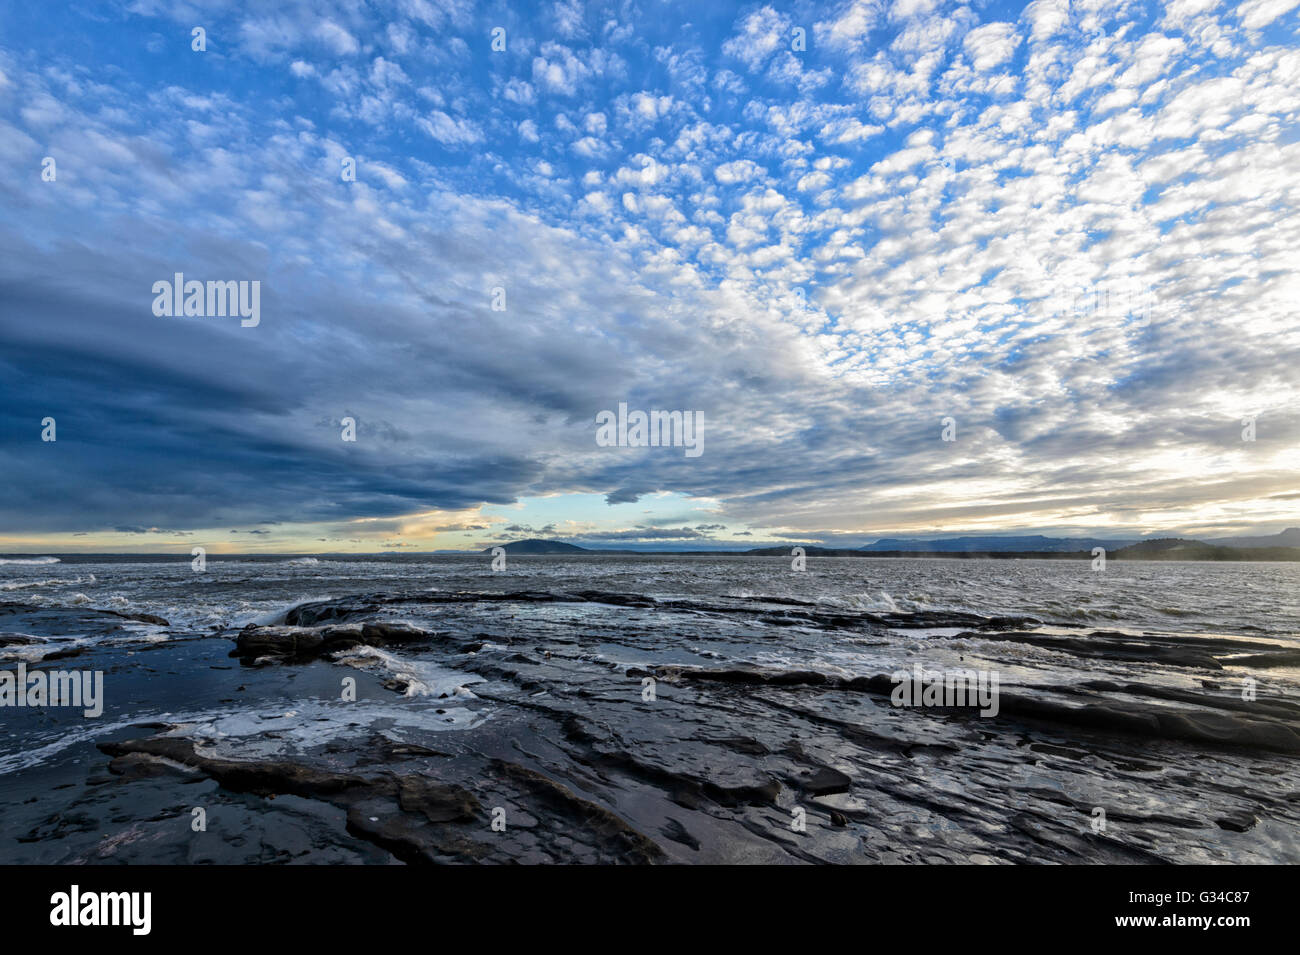 Mackerel Sky over Gerroa headland, Illawarra Coast, New South Wales, Australia Stock Photo